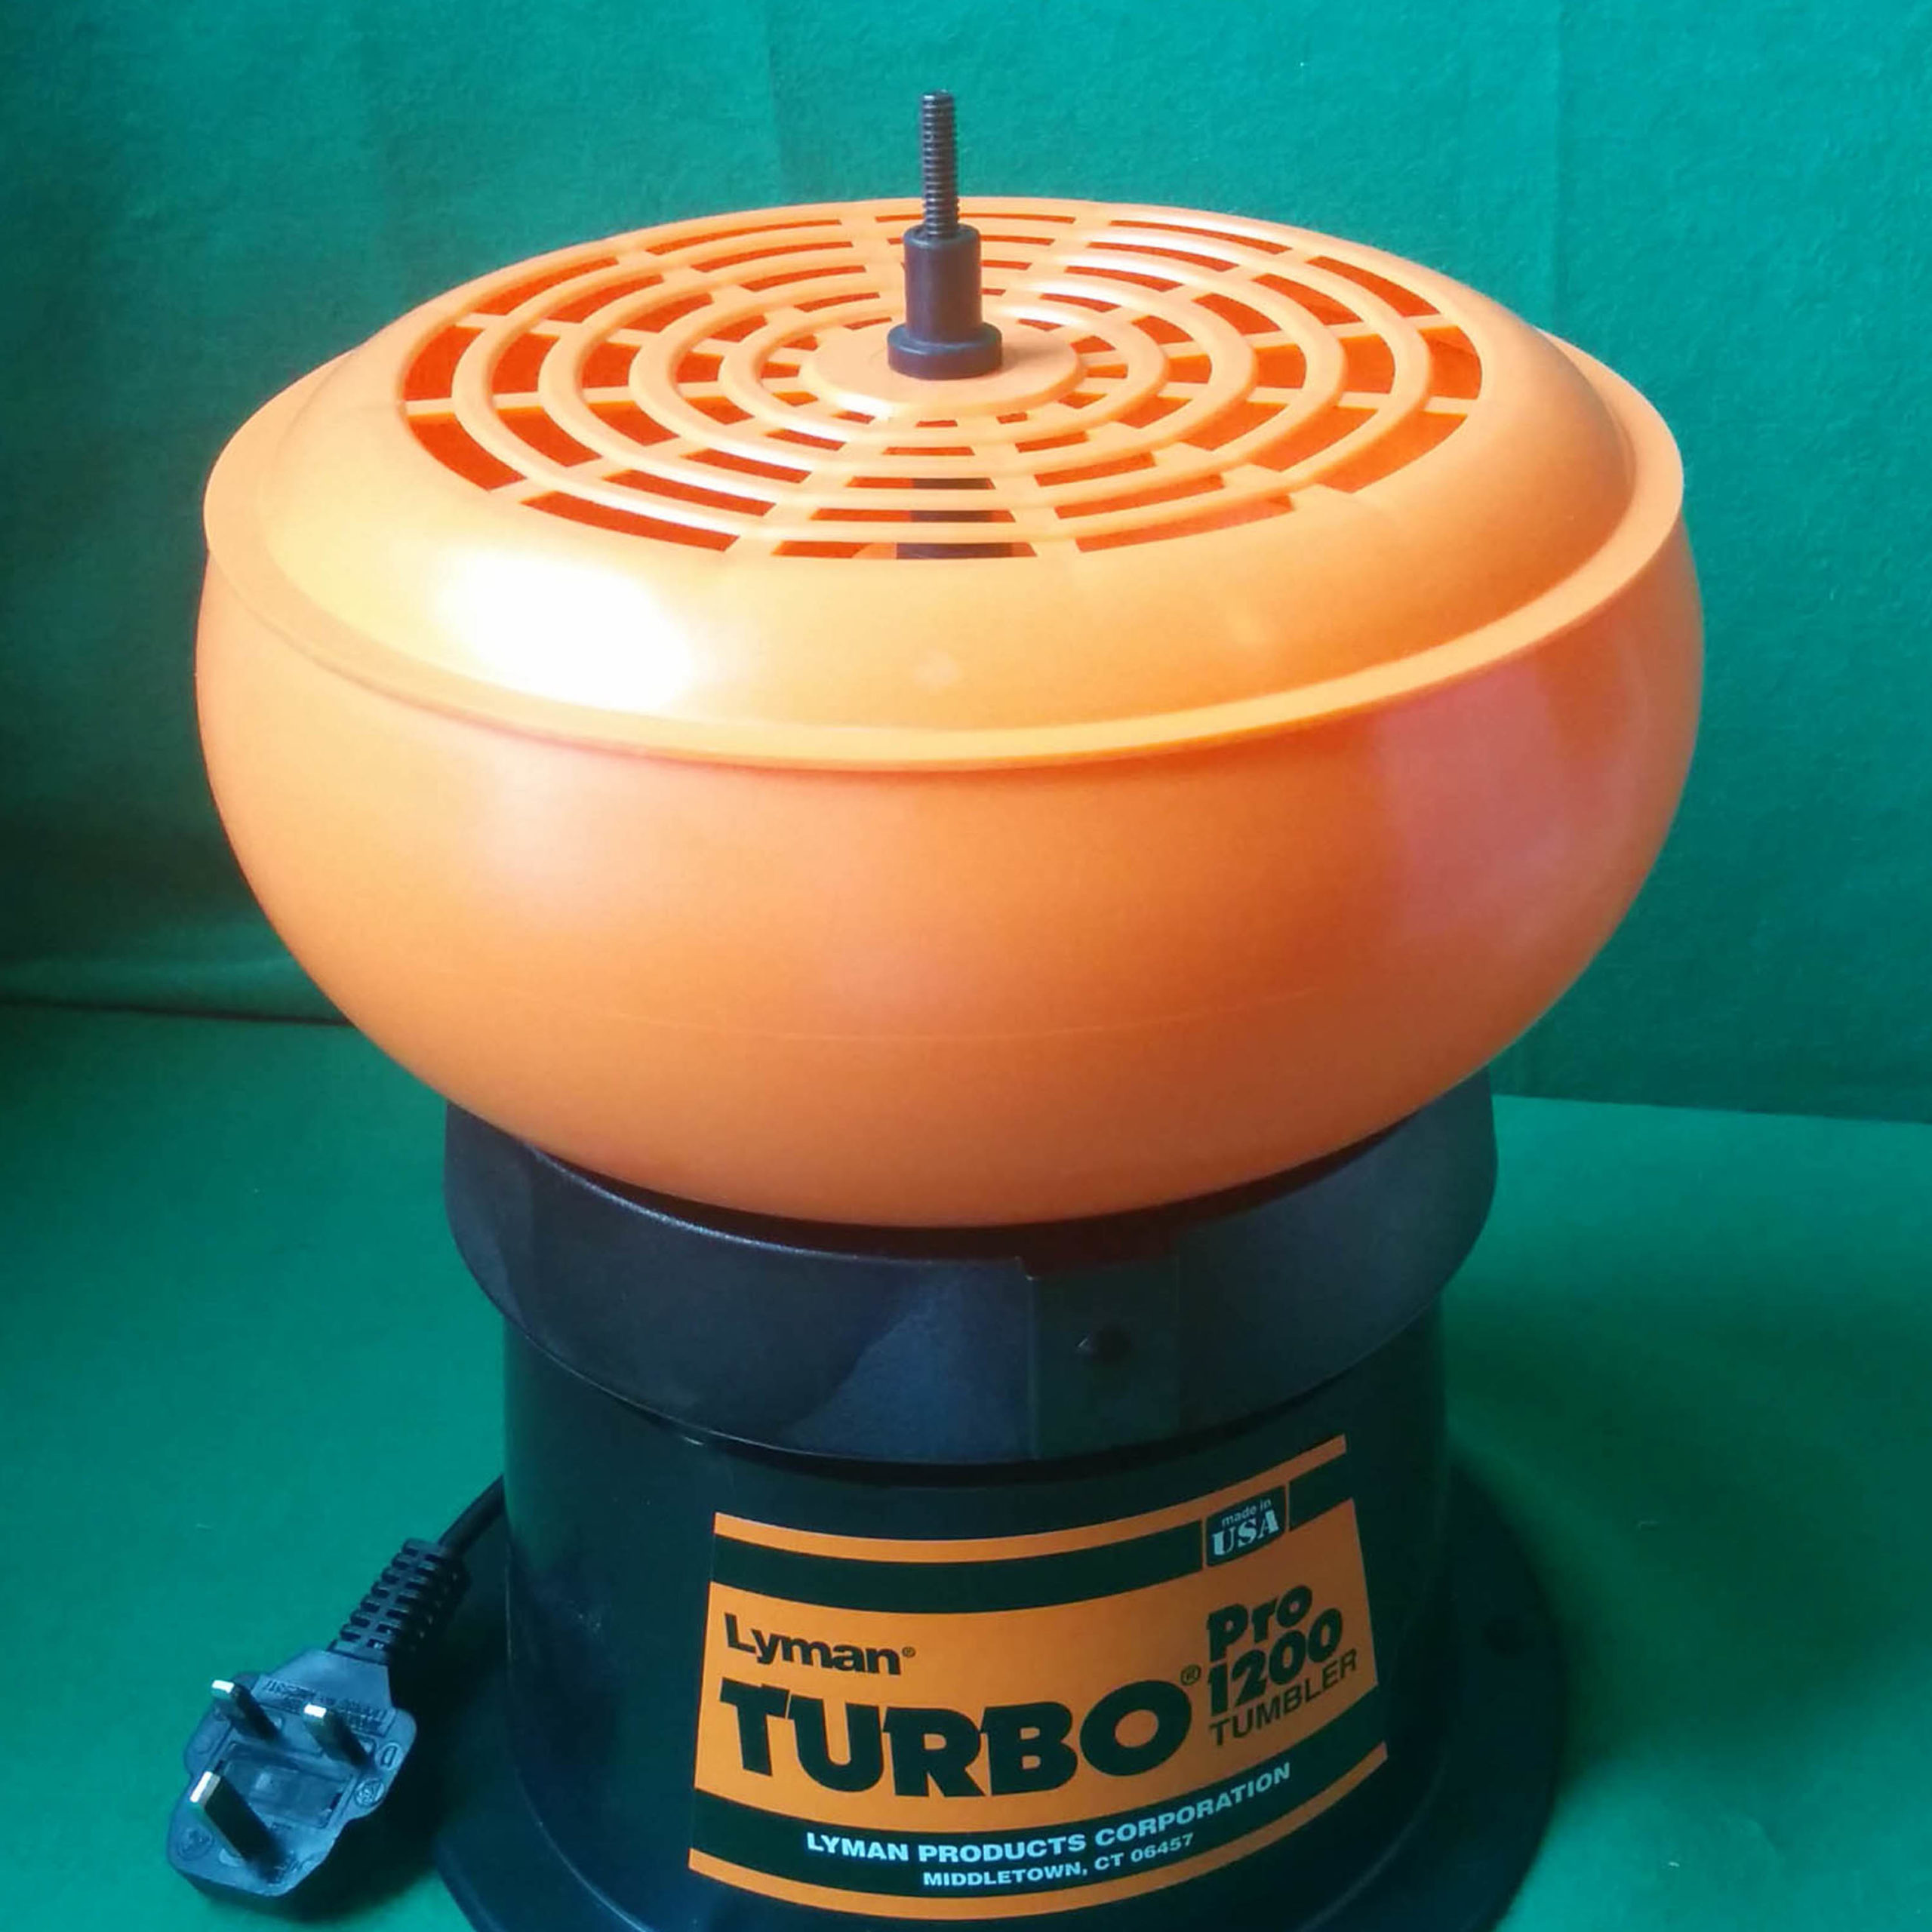 Lyman turbo tumbler 1200 PRO vibropulitore 220 V 